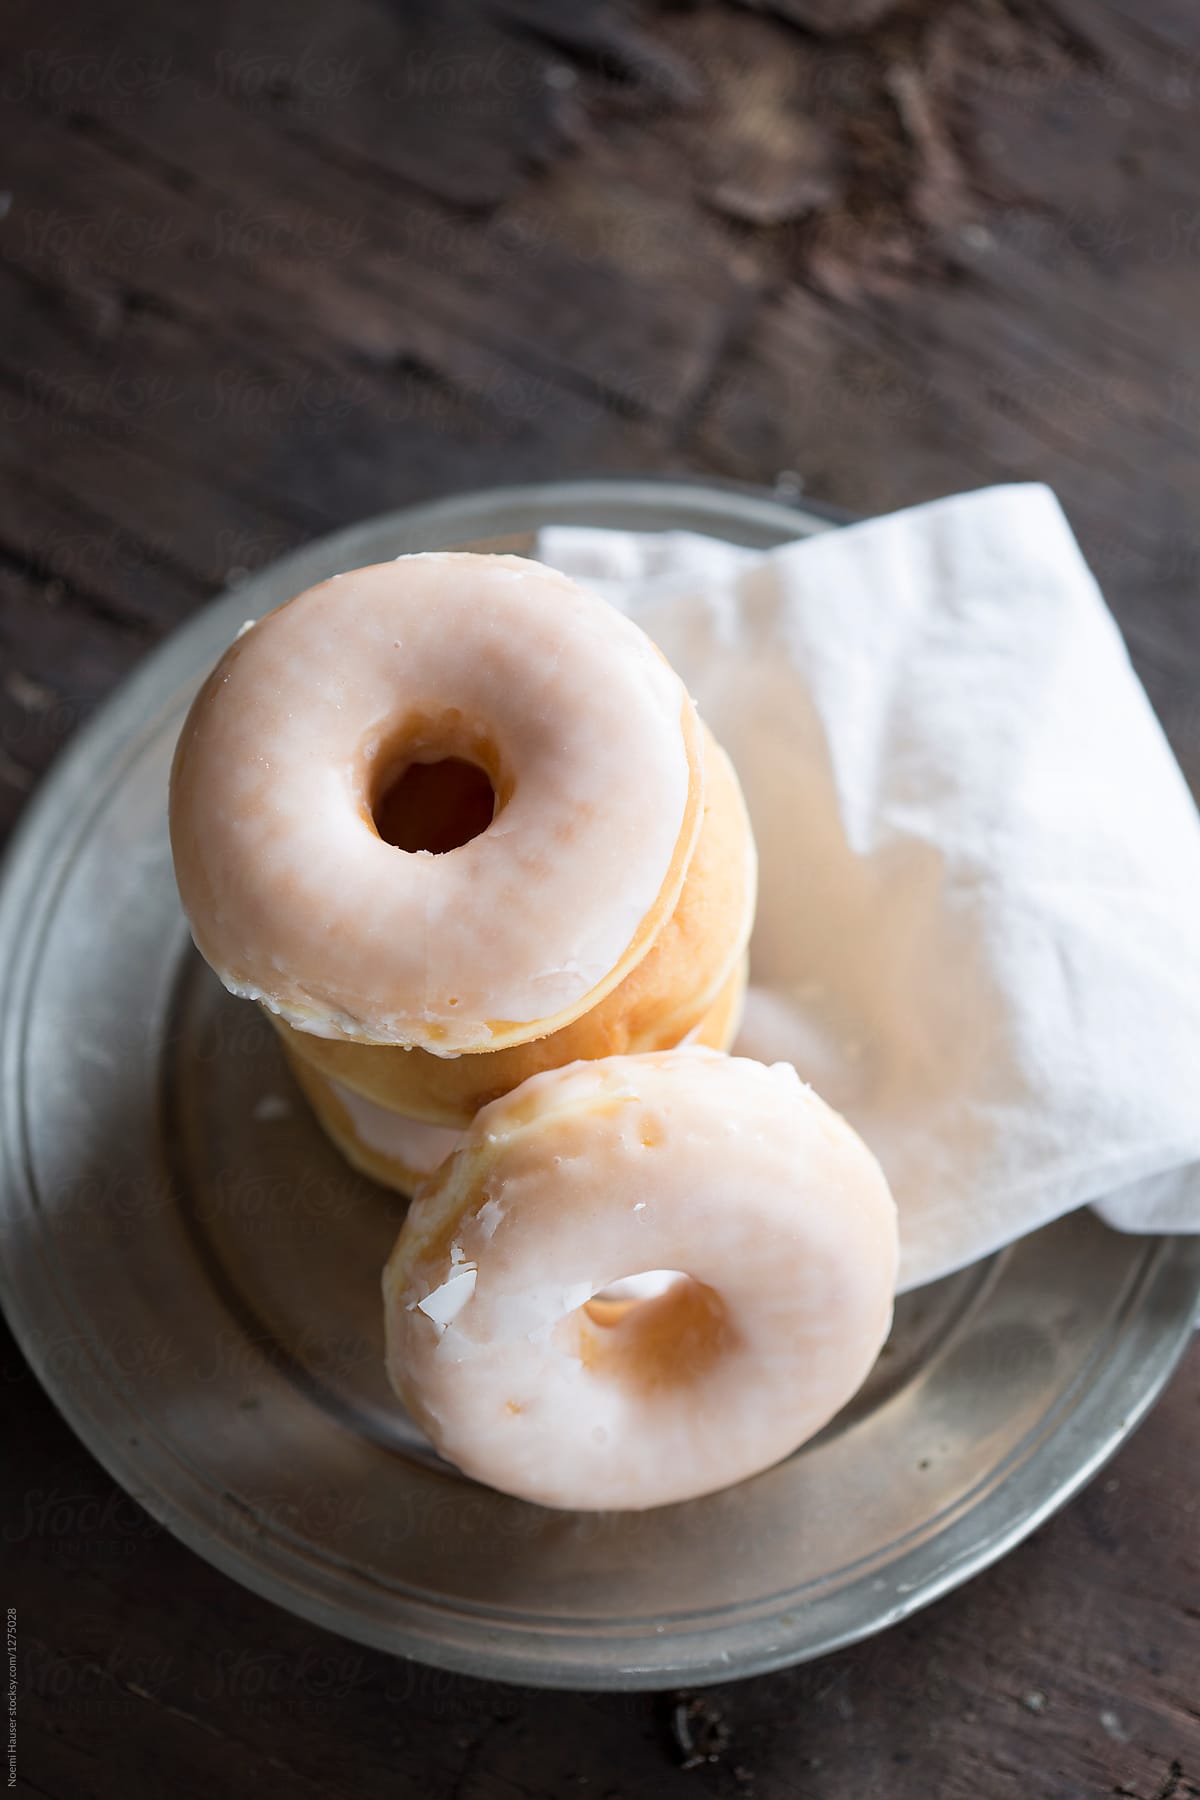 Sugar glazed donuts on vintage plate